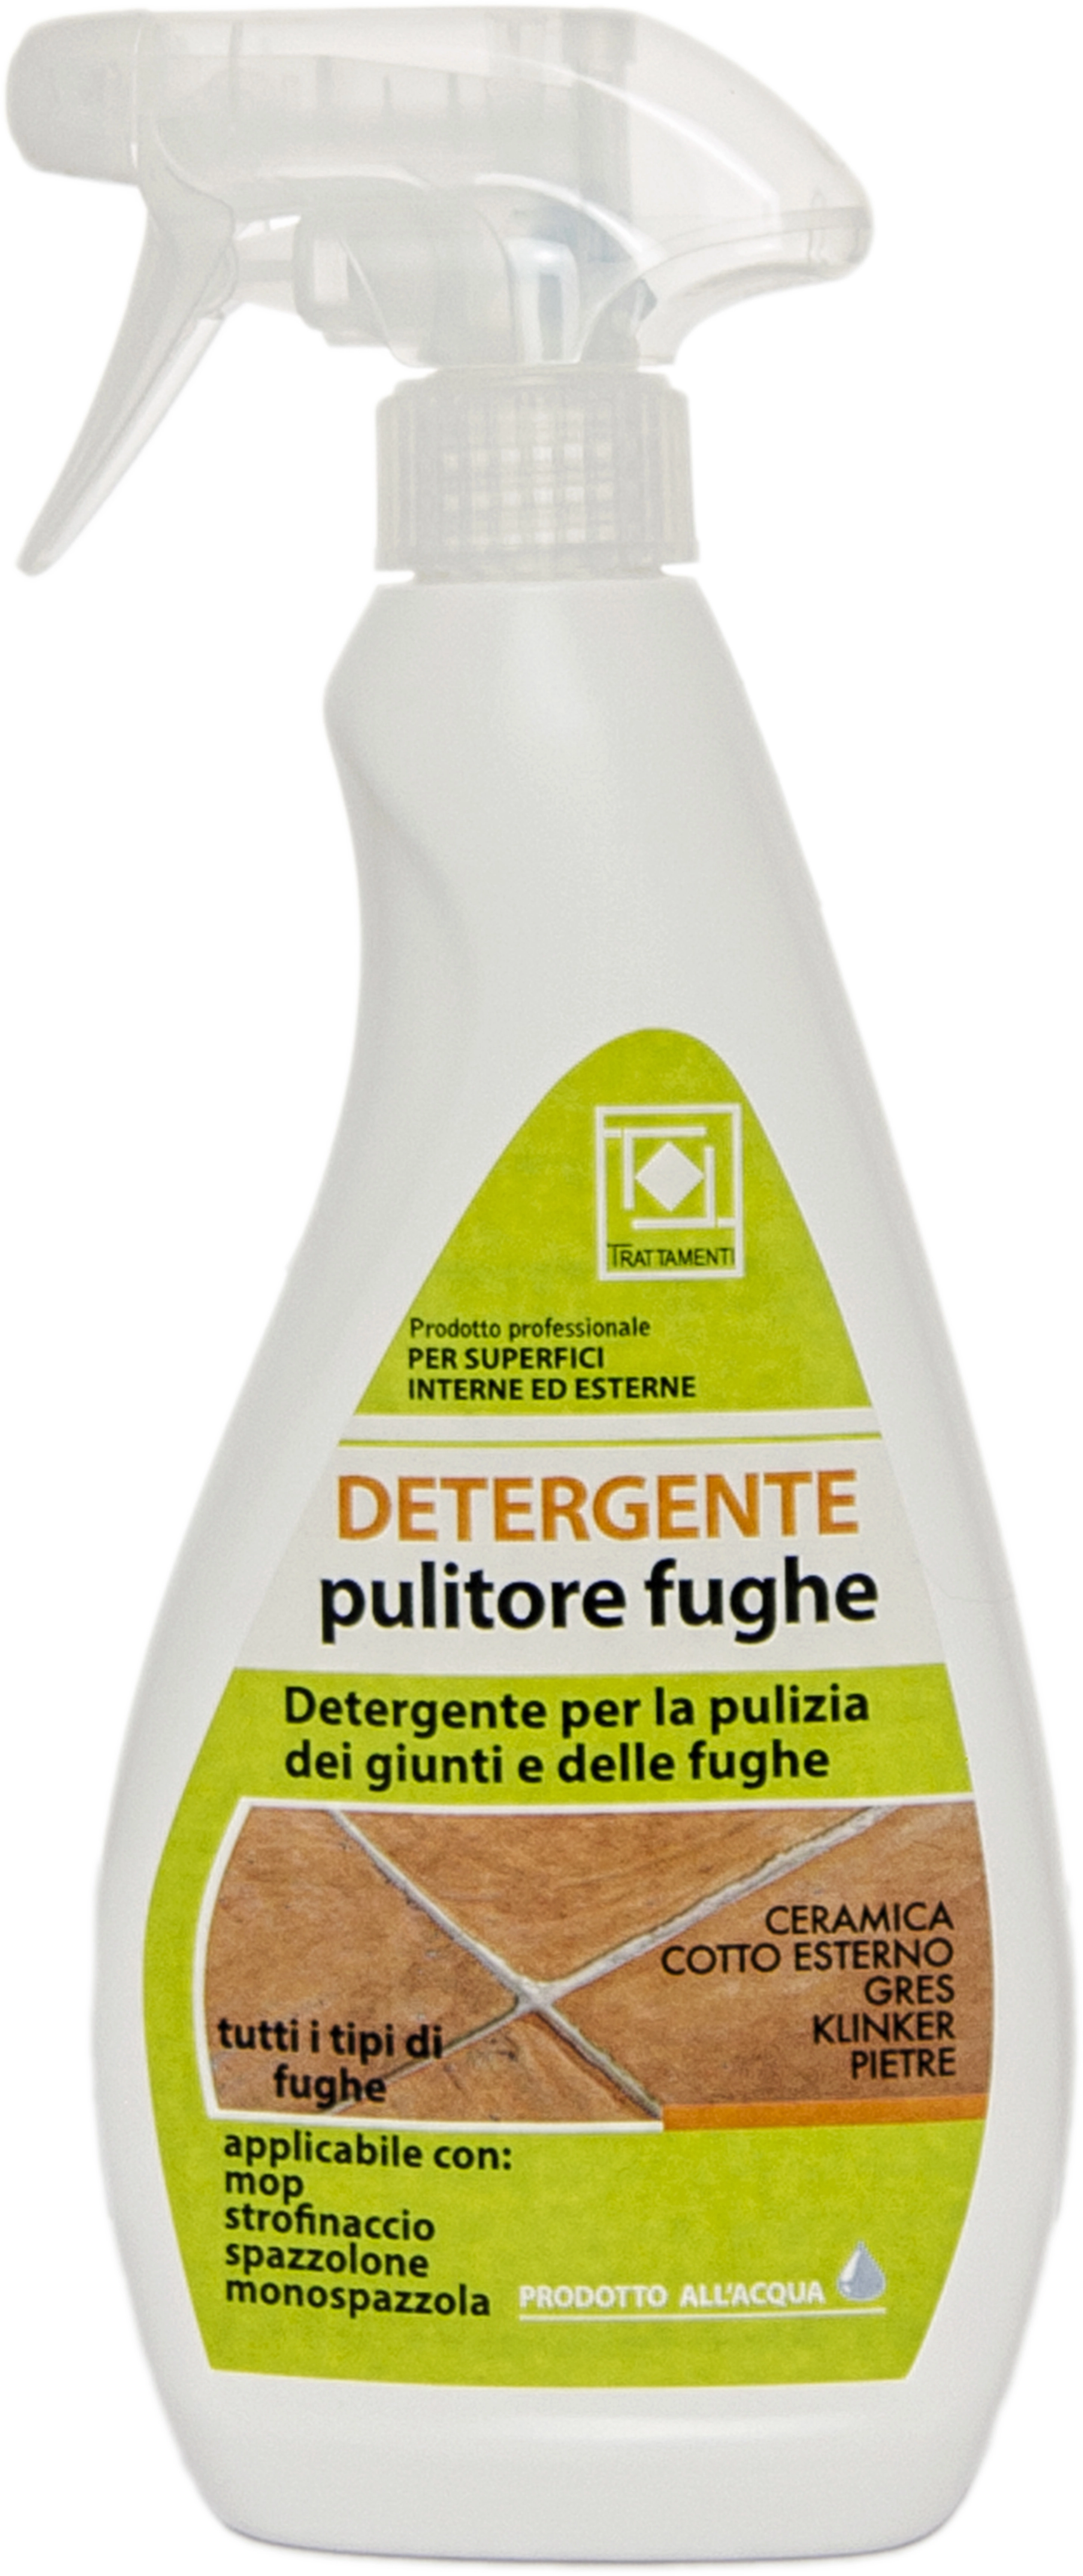 Detergente spray pulitore per fughe Faber